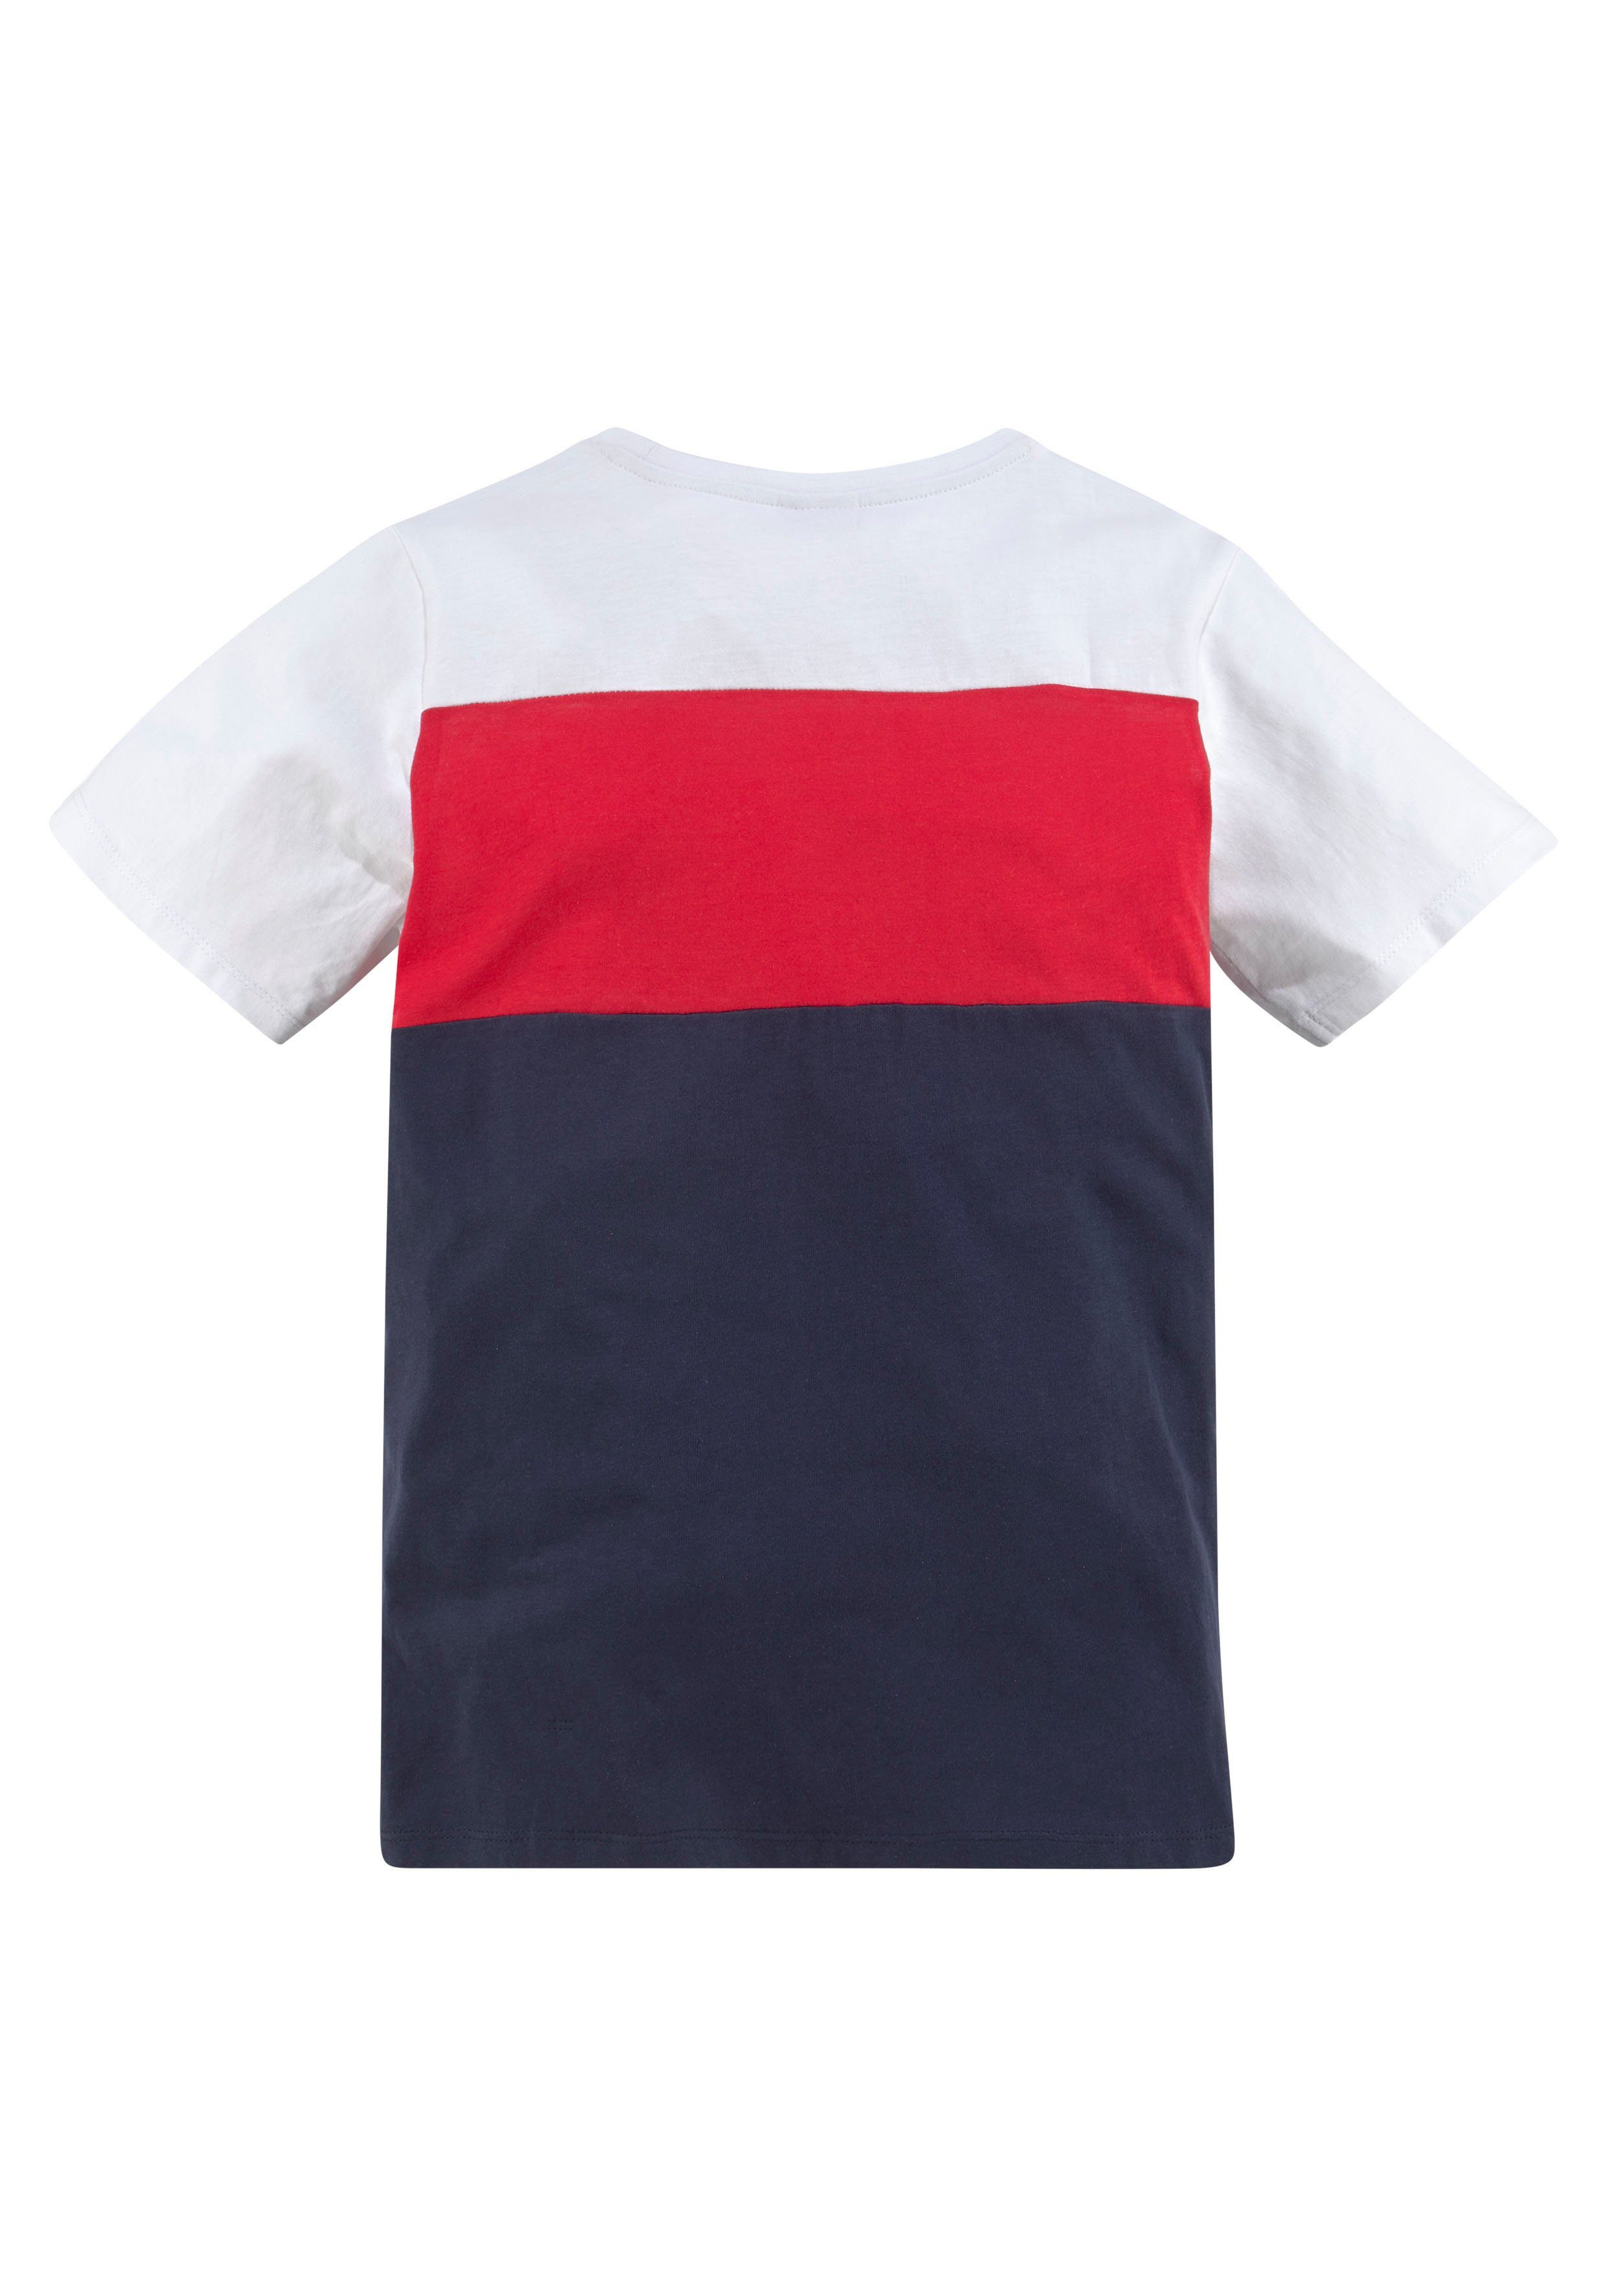 KangaROOS Colorblockdesign in T-Shirt